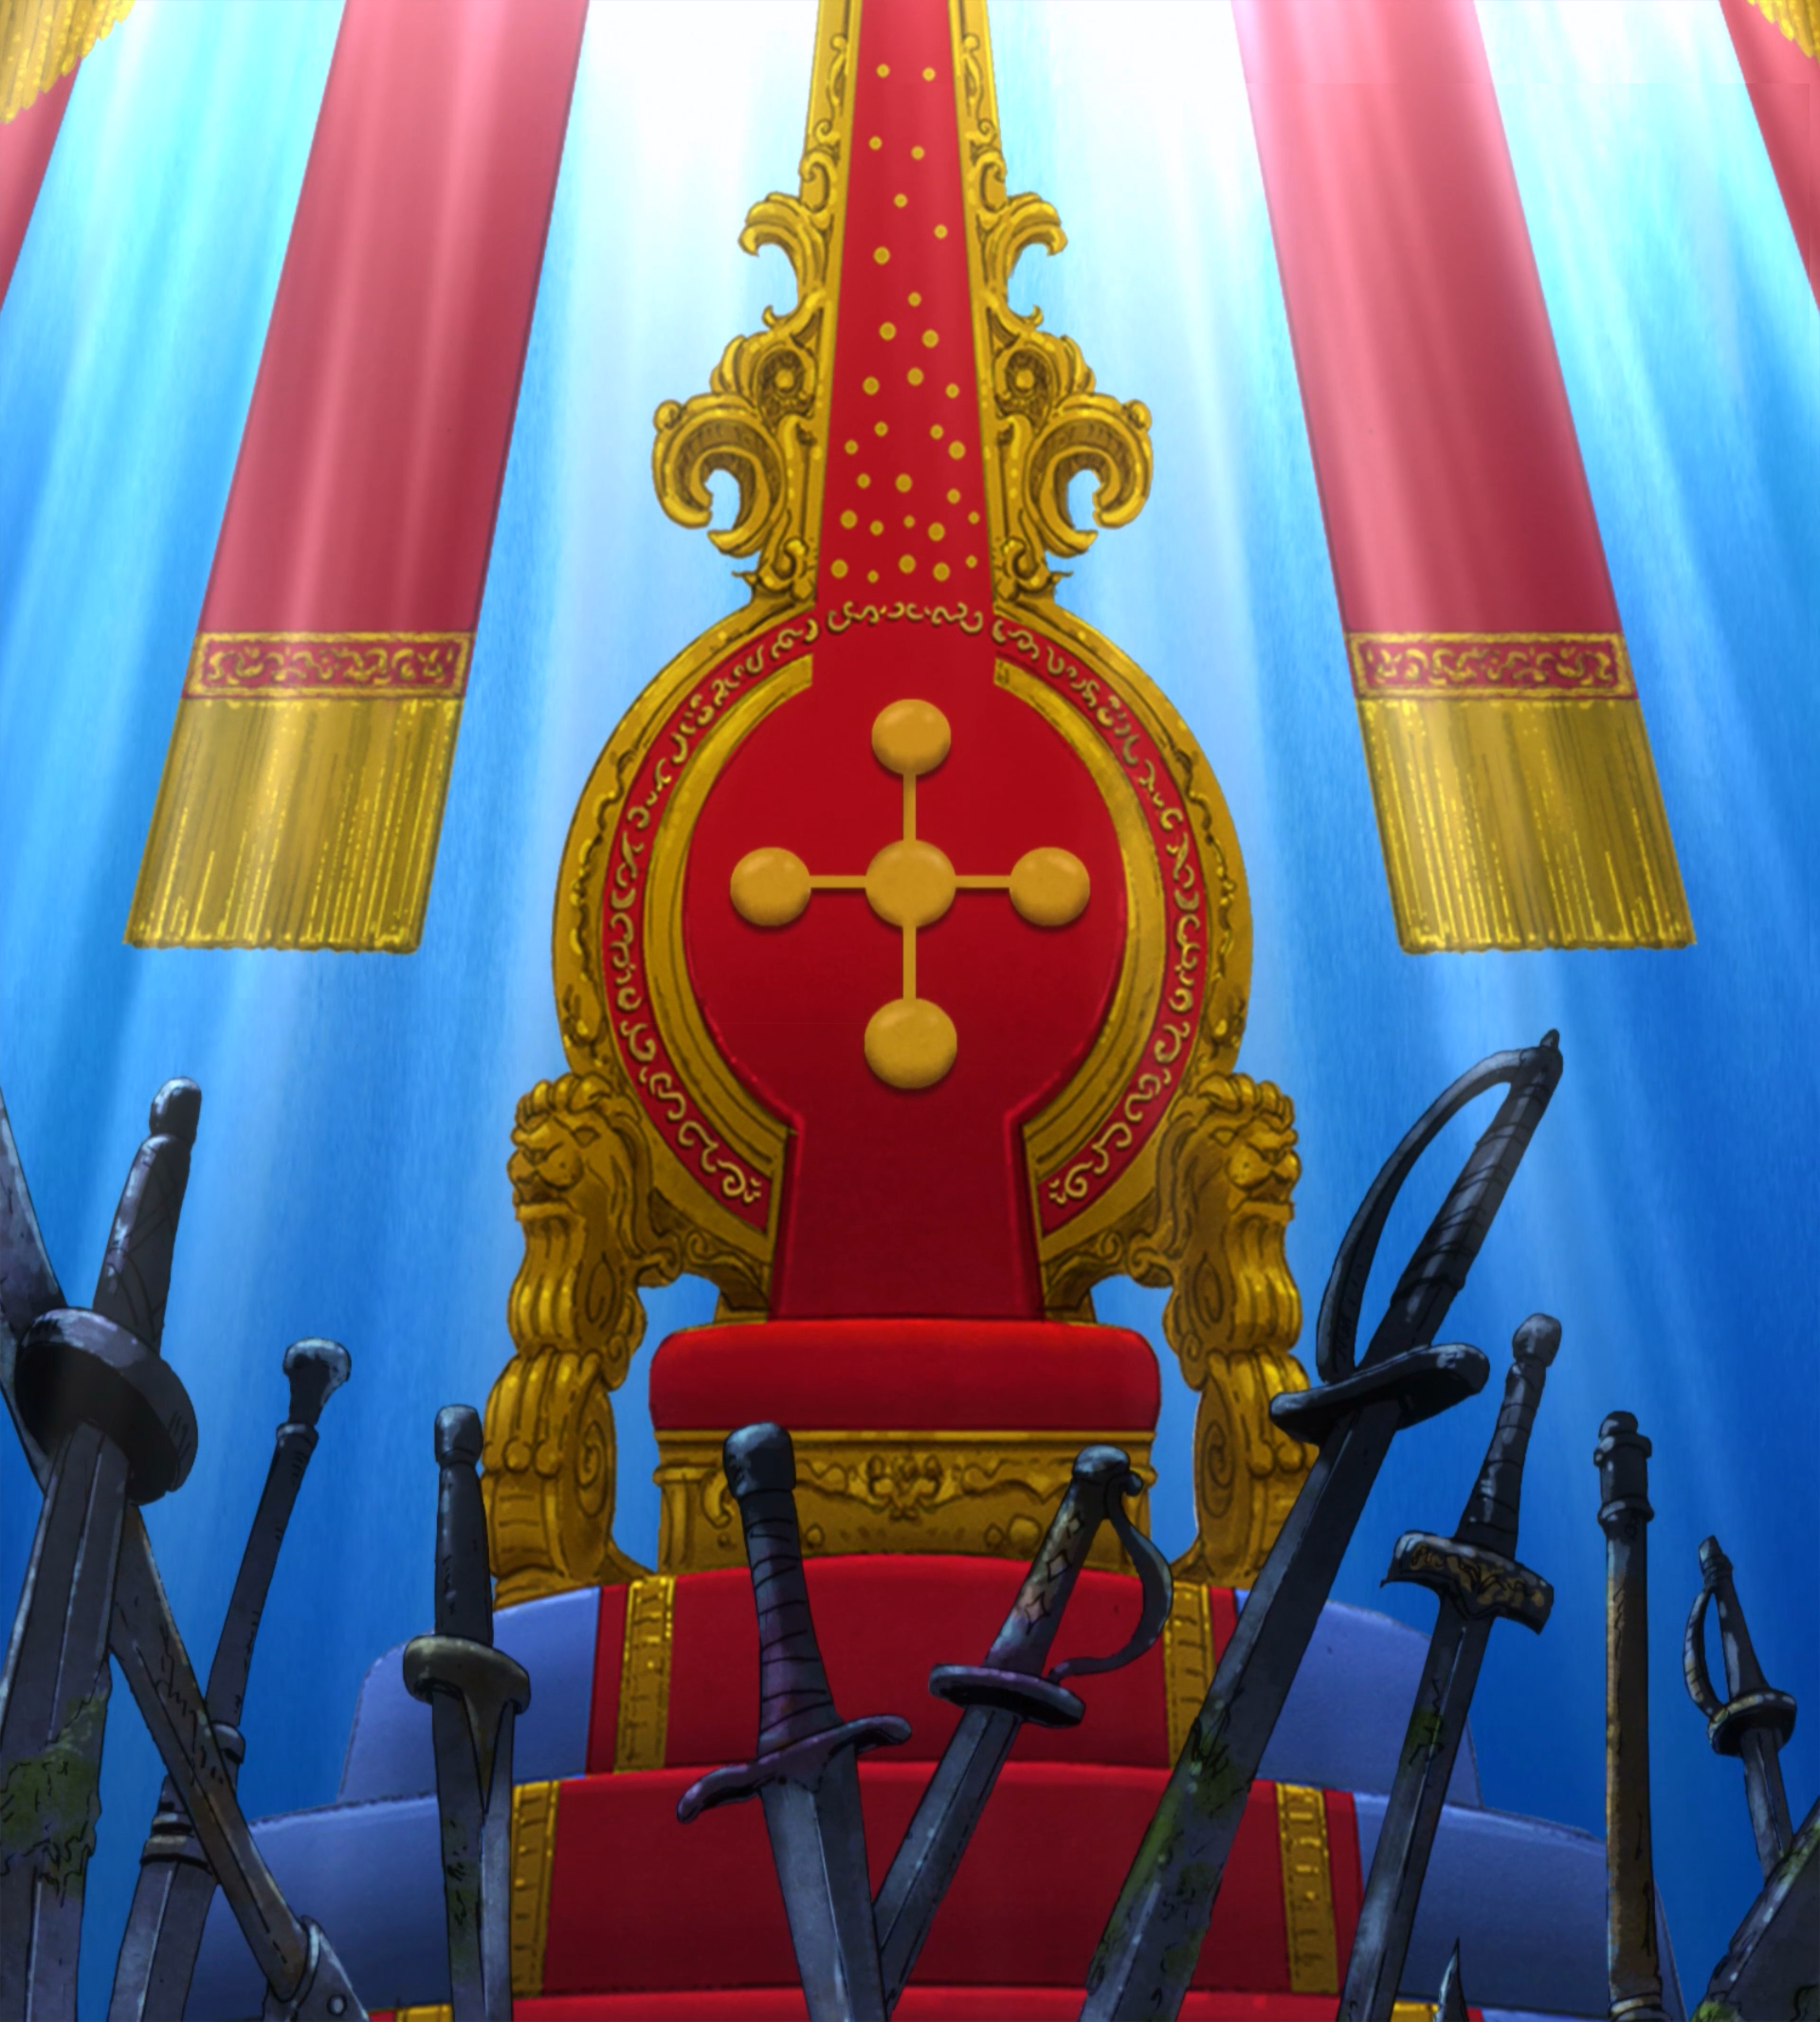 Anime Villain Gentleman Sitting on Throne - Anime Art - Sticker | TeePublic